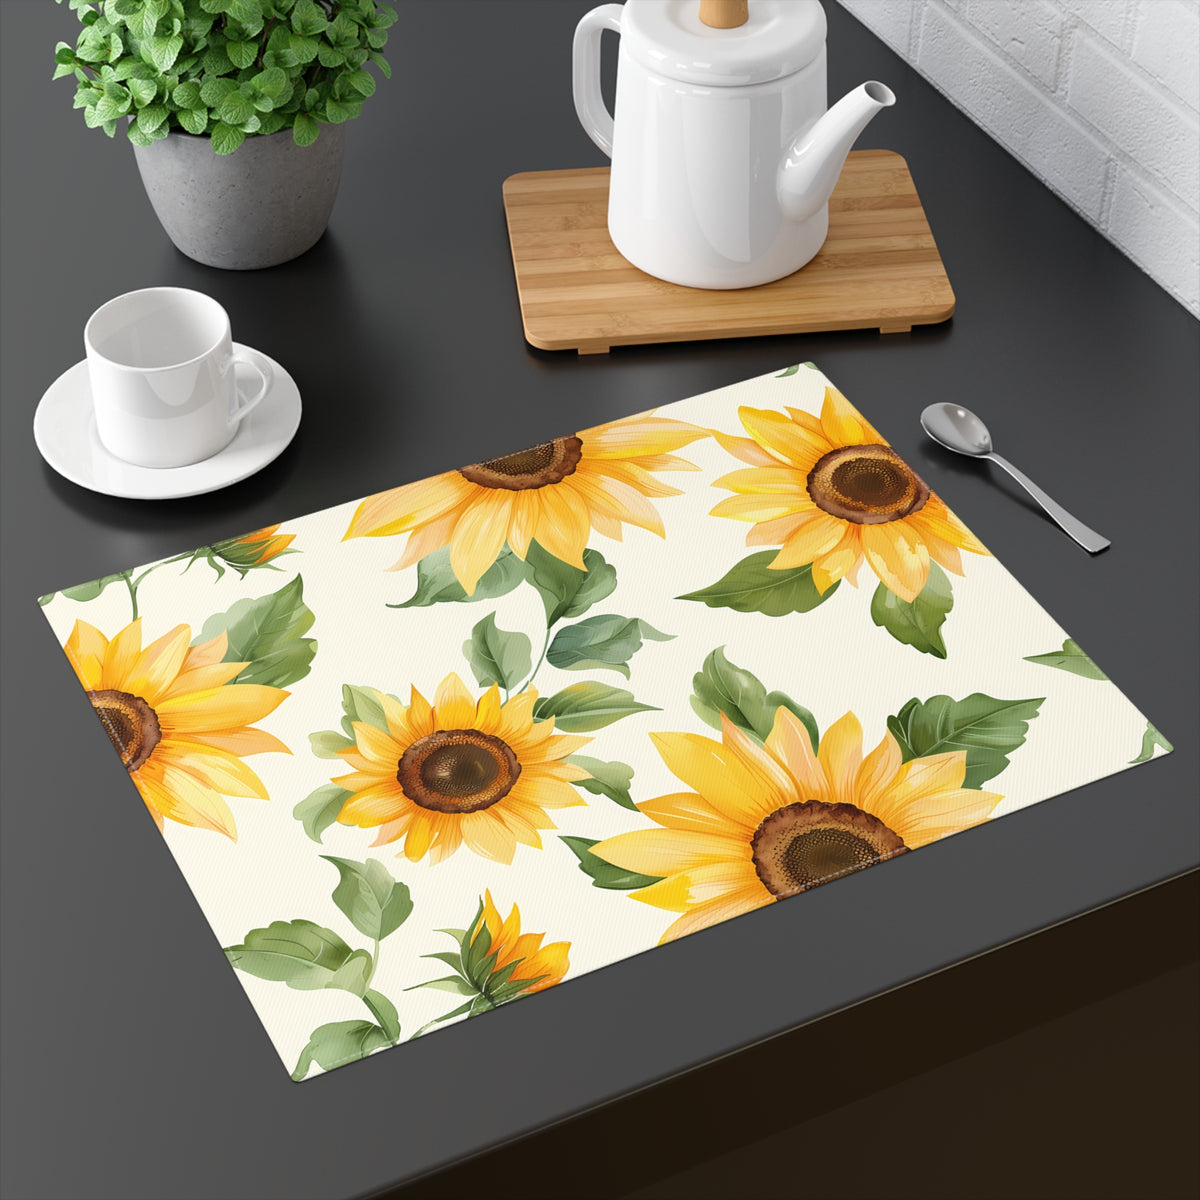 Decorative Cotton Place Mat with Elegant Sunflower Design (18&quot; x 14&quot;)